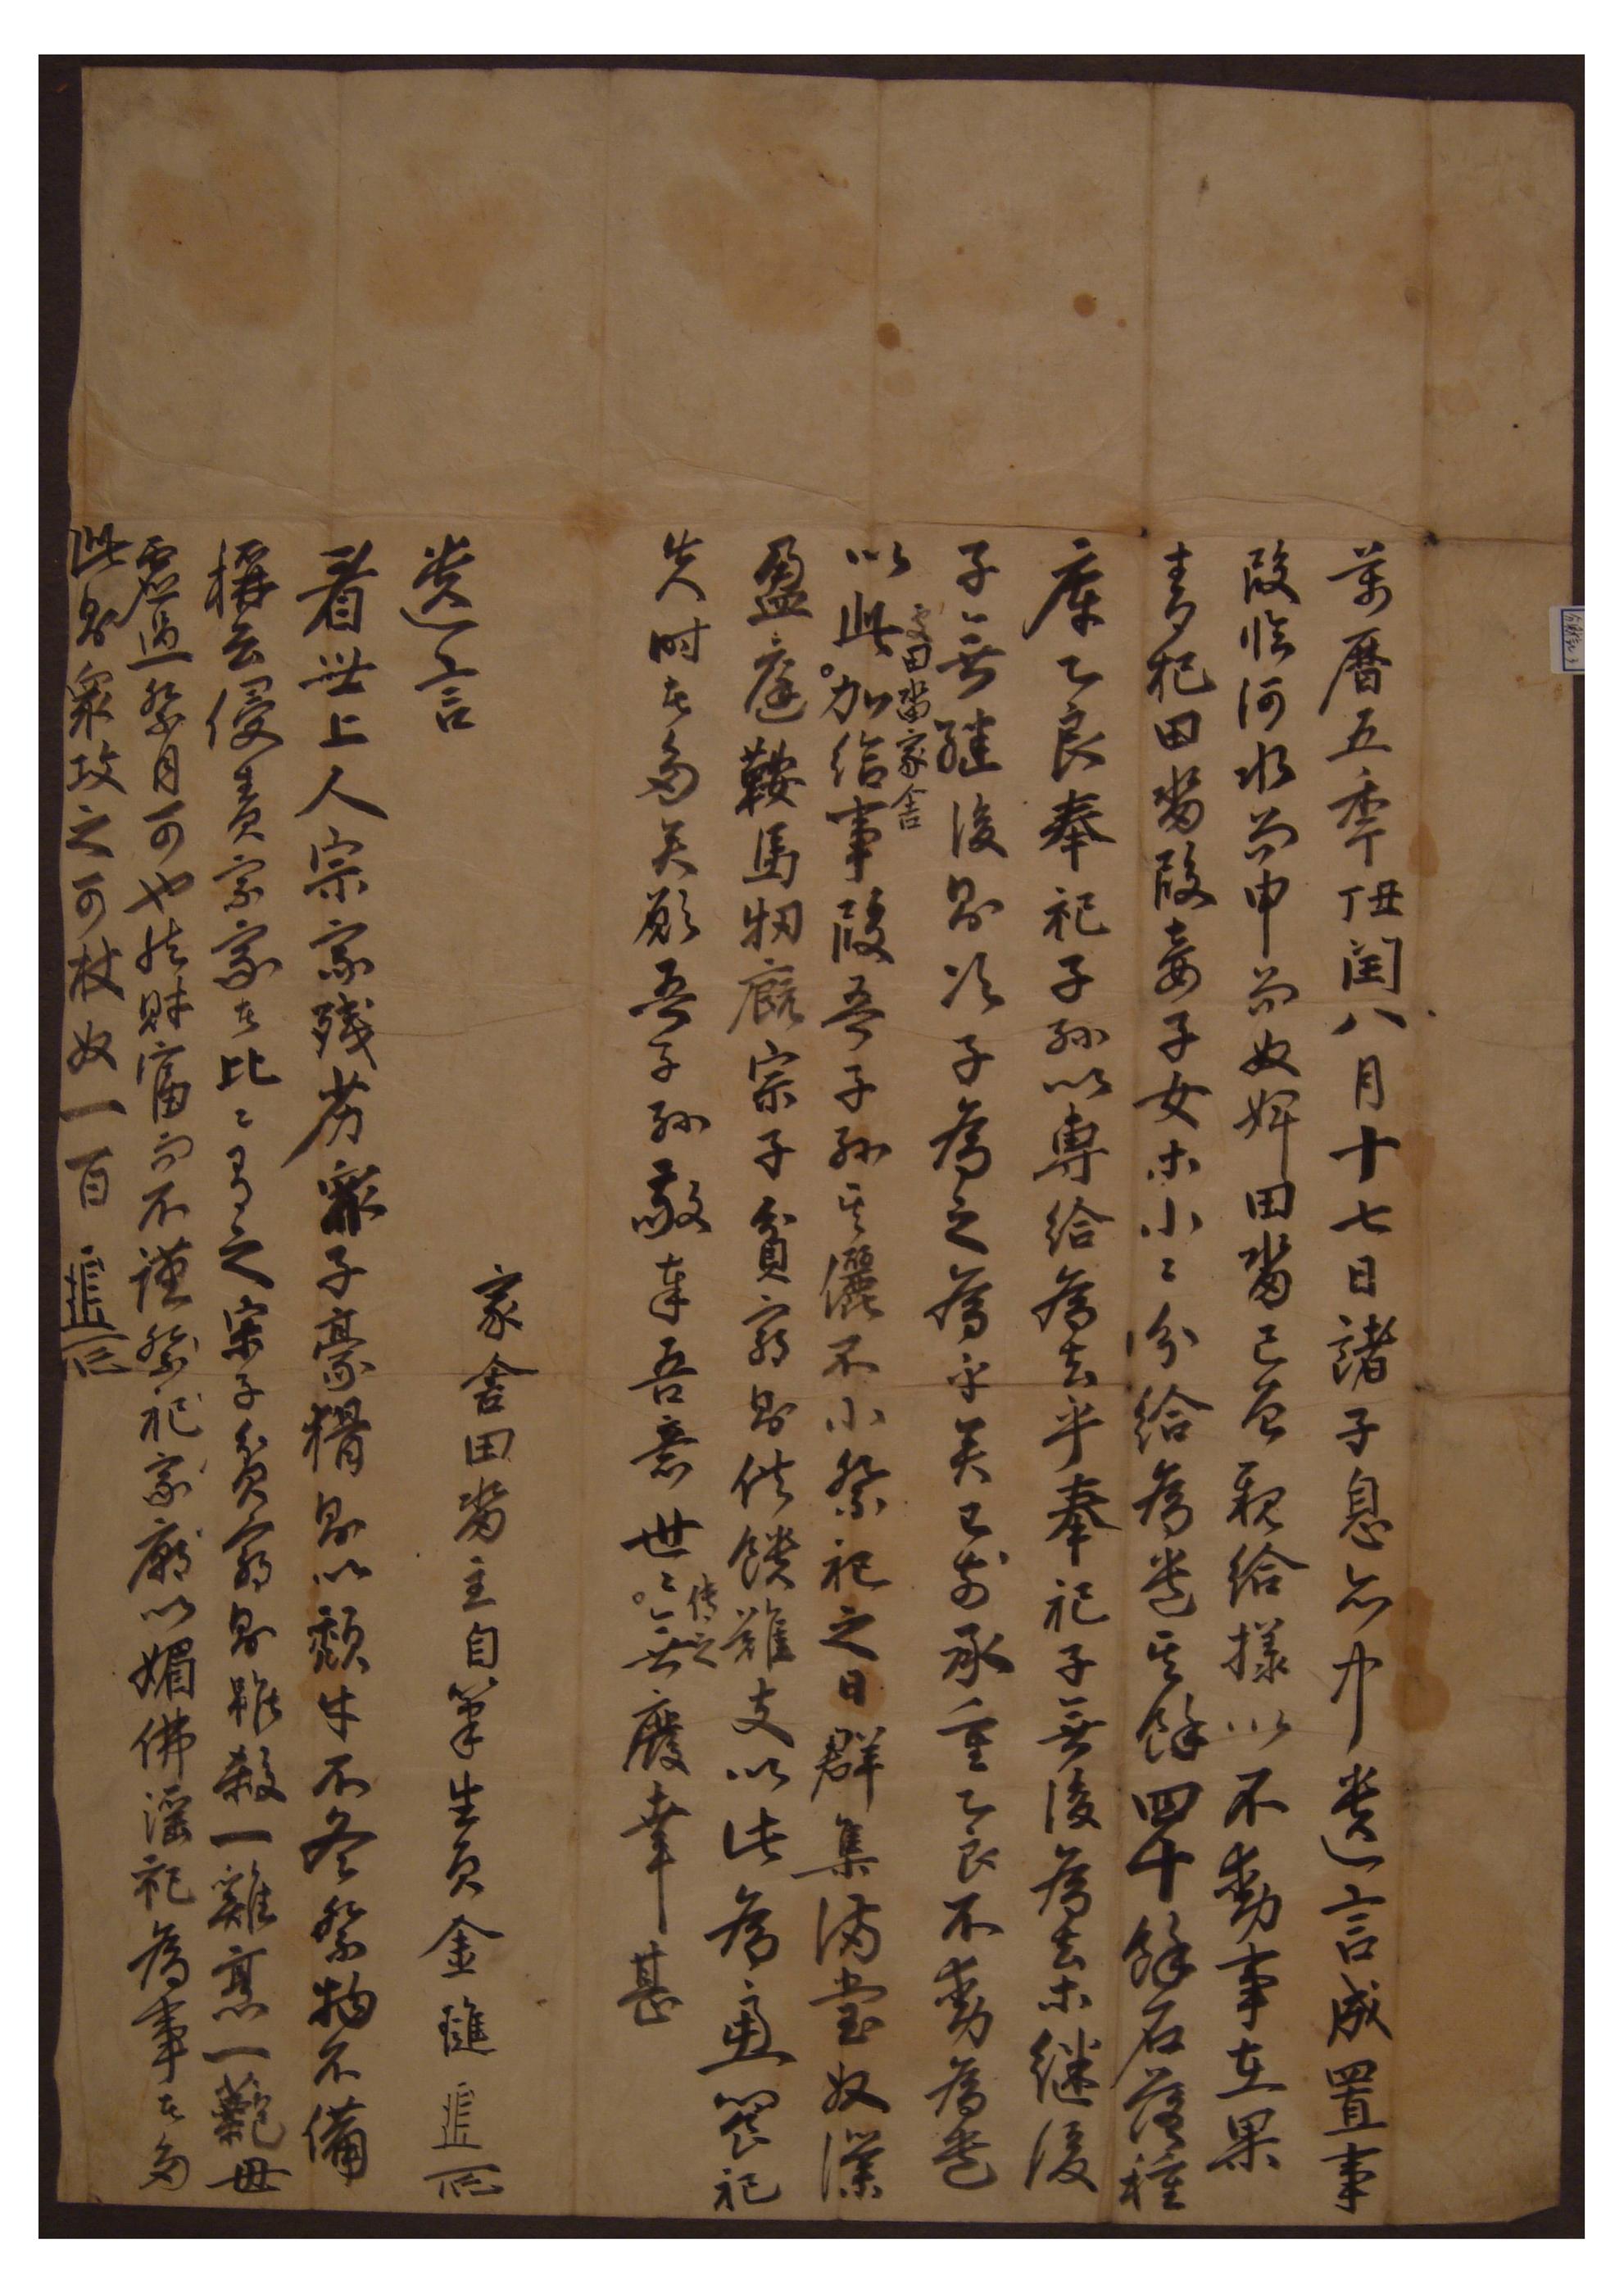 1577년에 생원 김진이 제사와 관련하여 자녀에게 남긴 유언